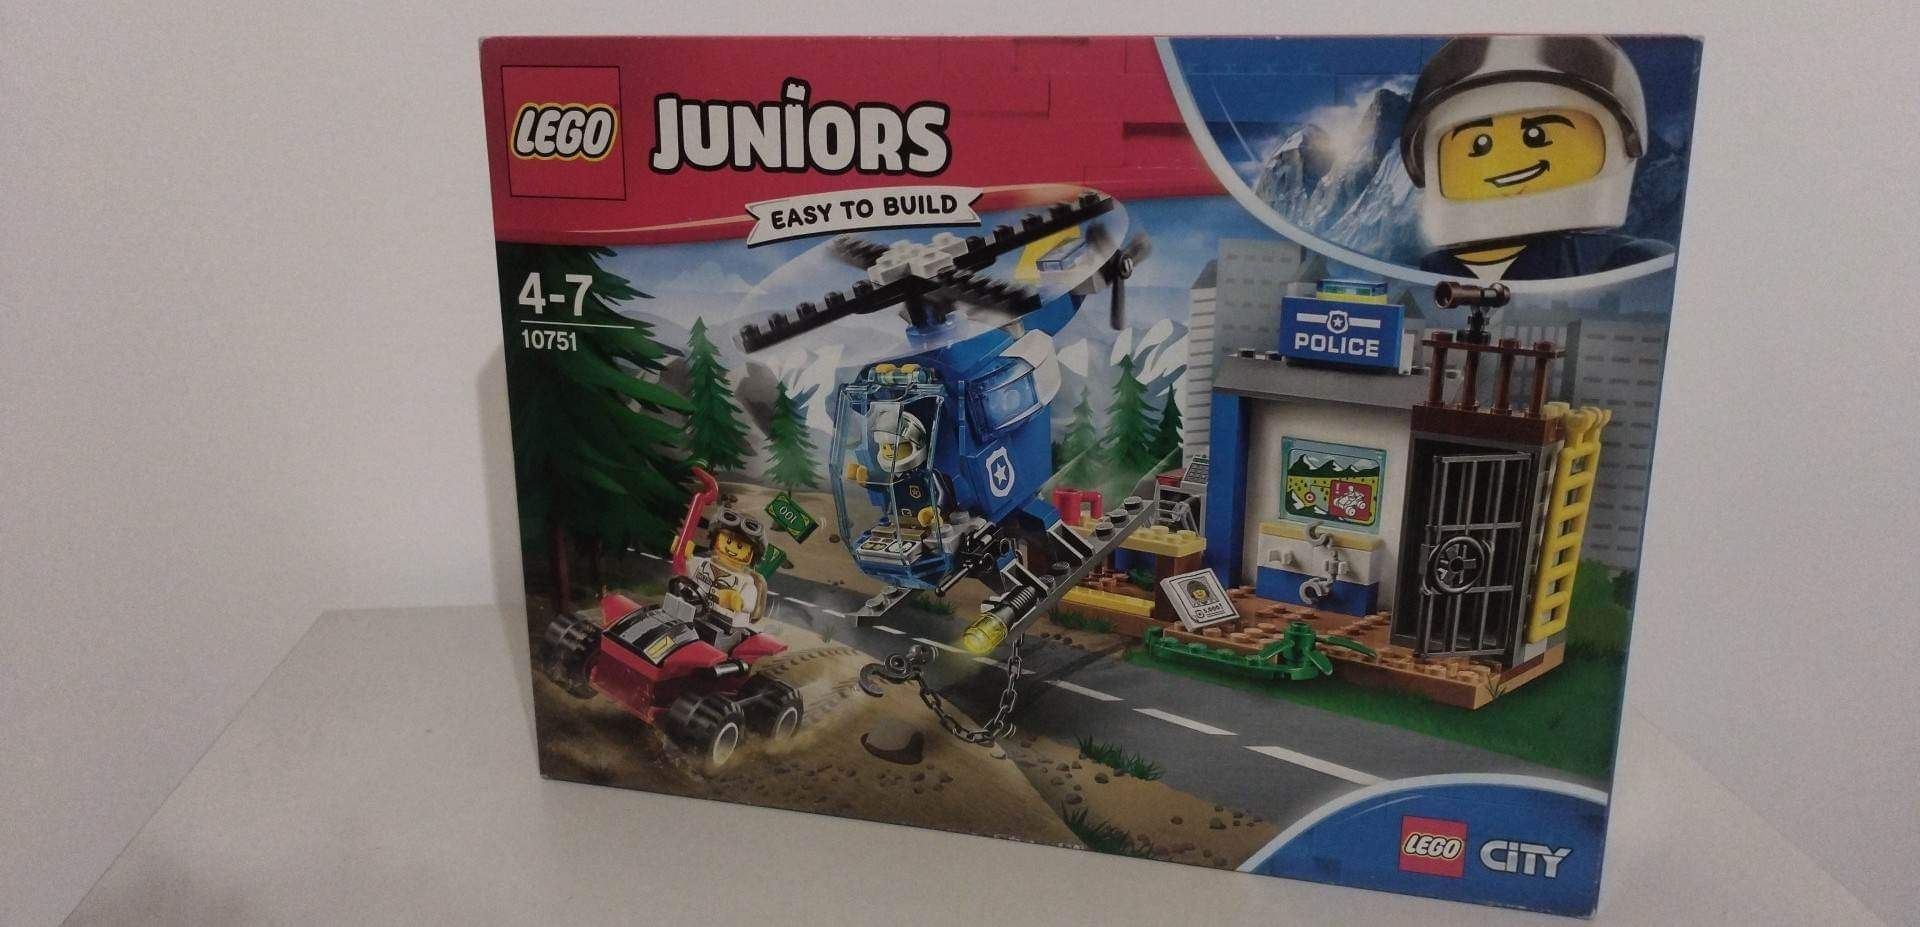 LEGO City Juniors 10751